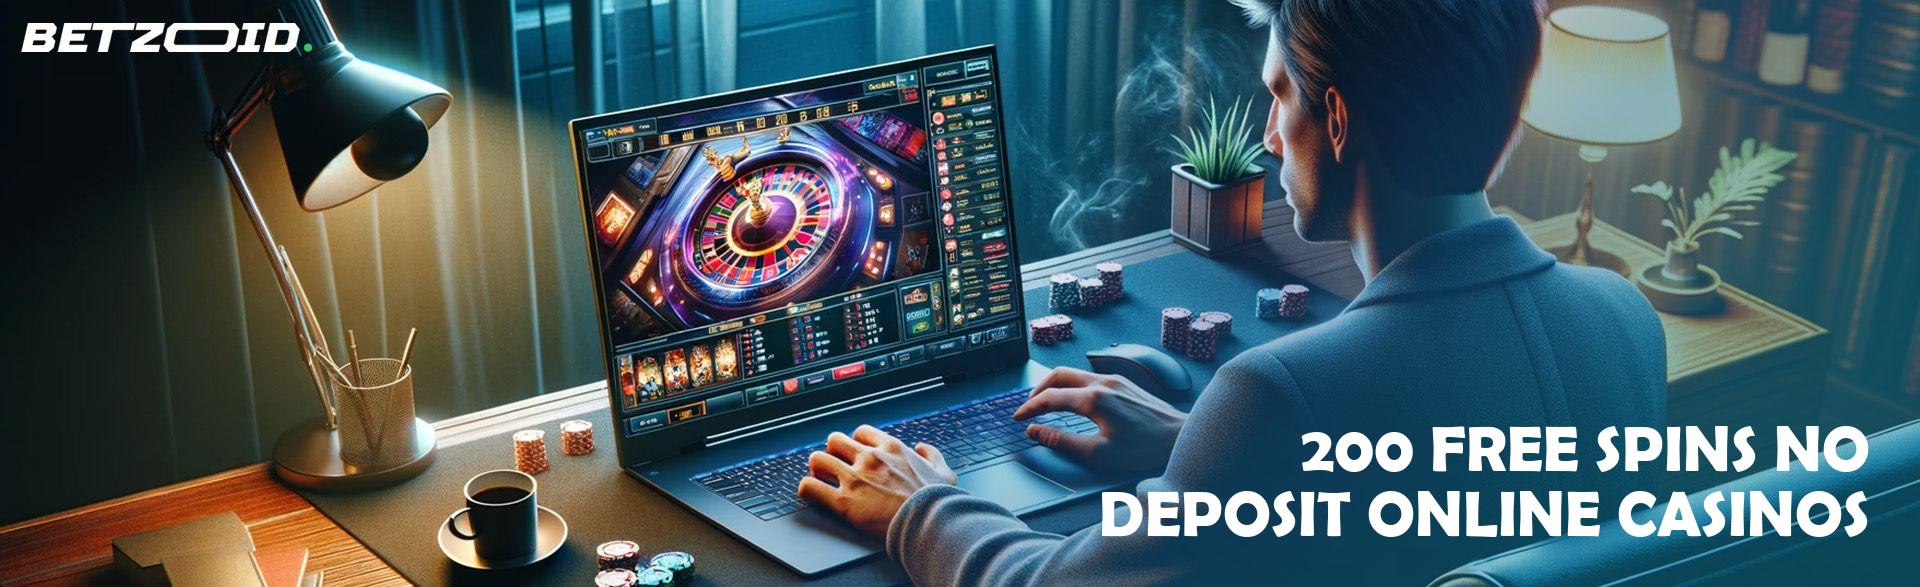 200 Free Spins No Deposit Online Casinos.